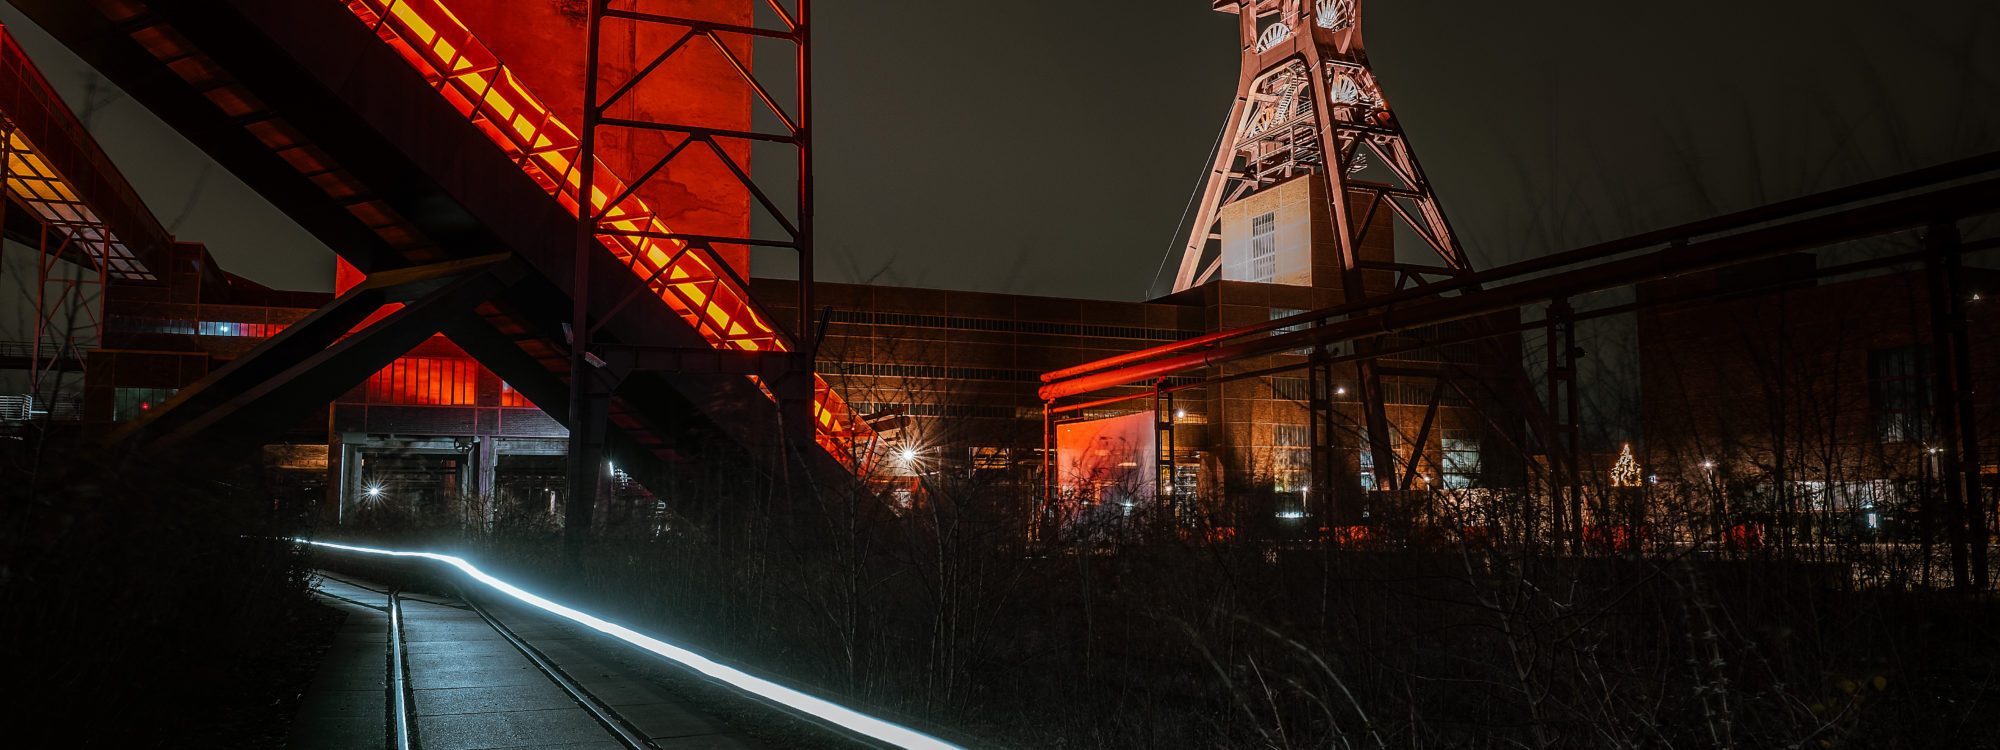 Das Foto zeigt die Zeche Zollverein bei einem Nightride durchs radrevier.ruhr